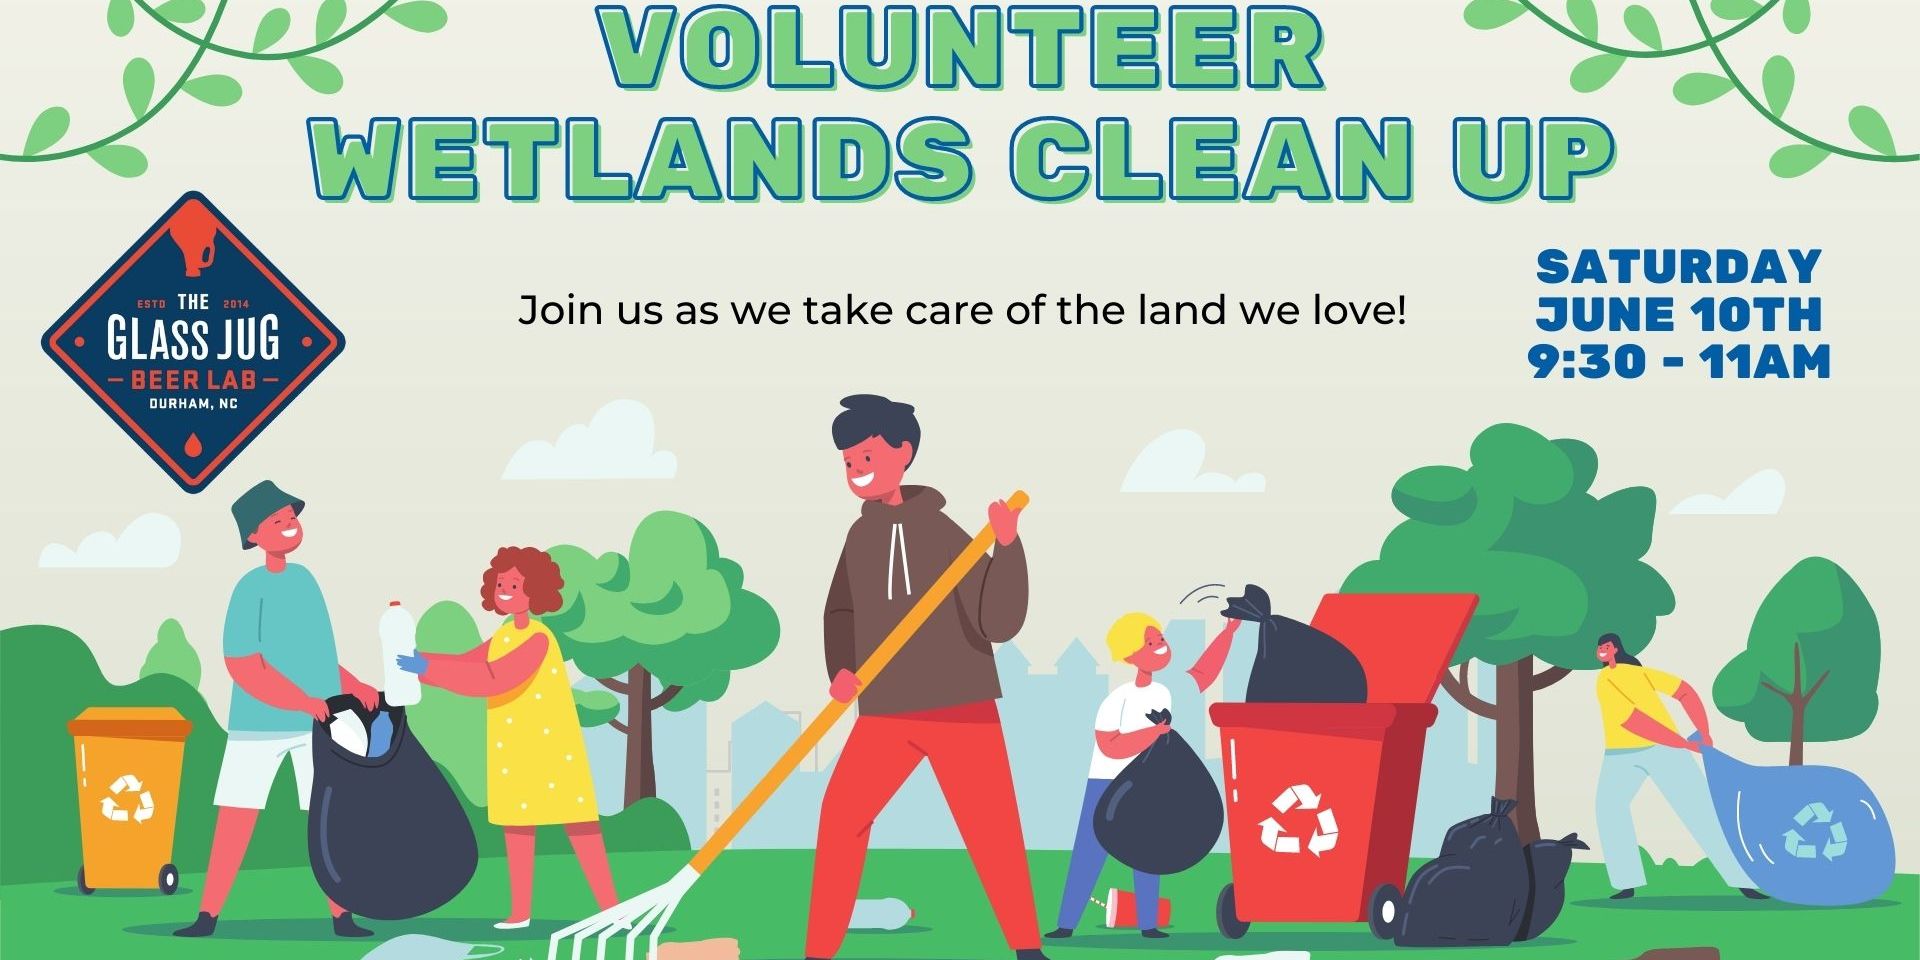 Volunteer Wetlands Clean Up promotional image